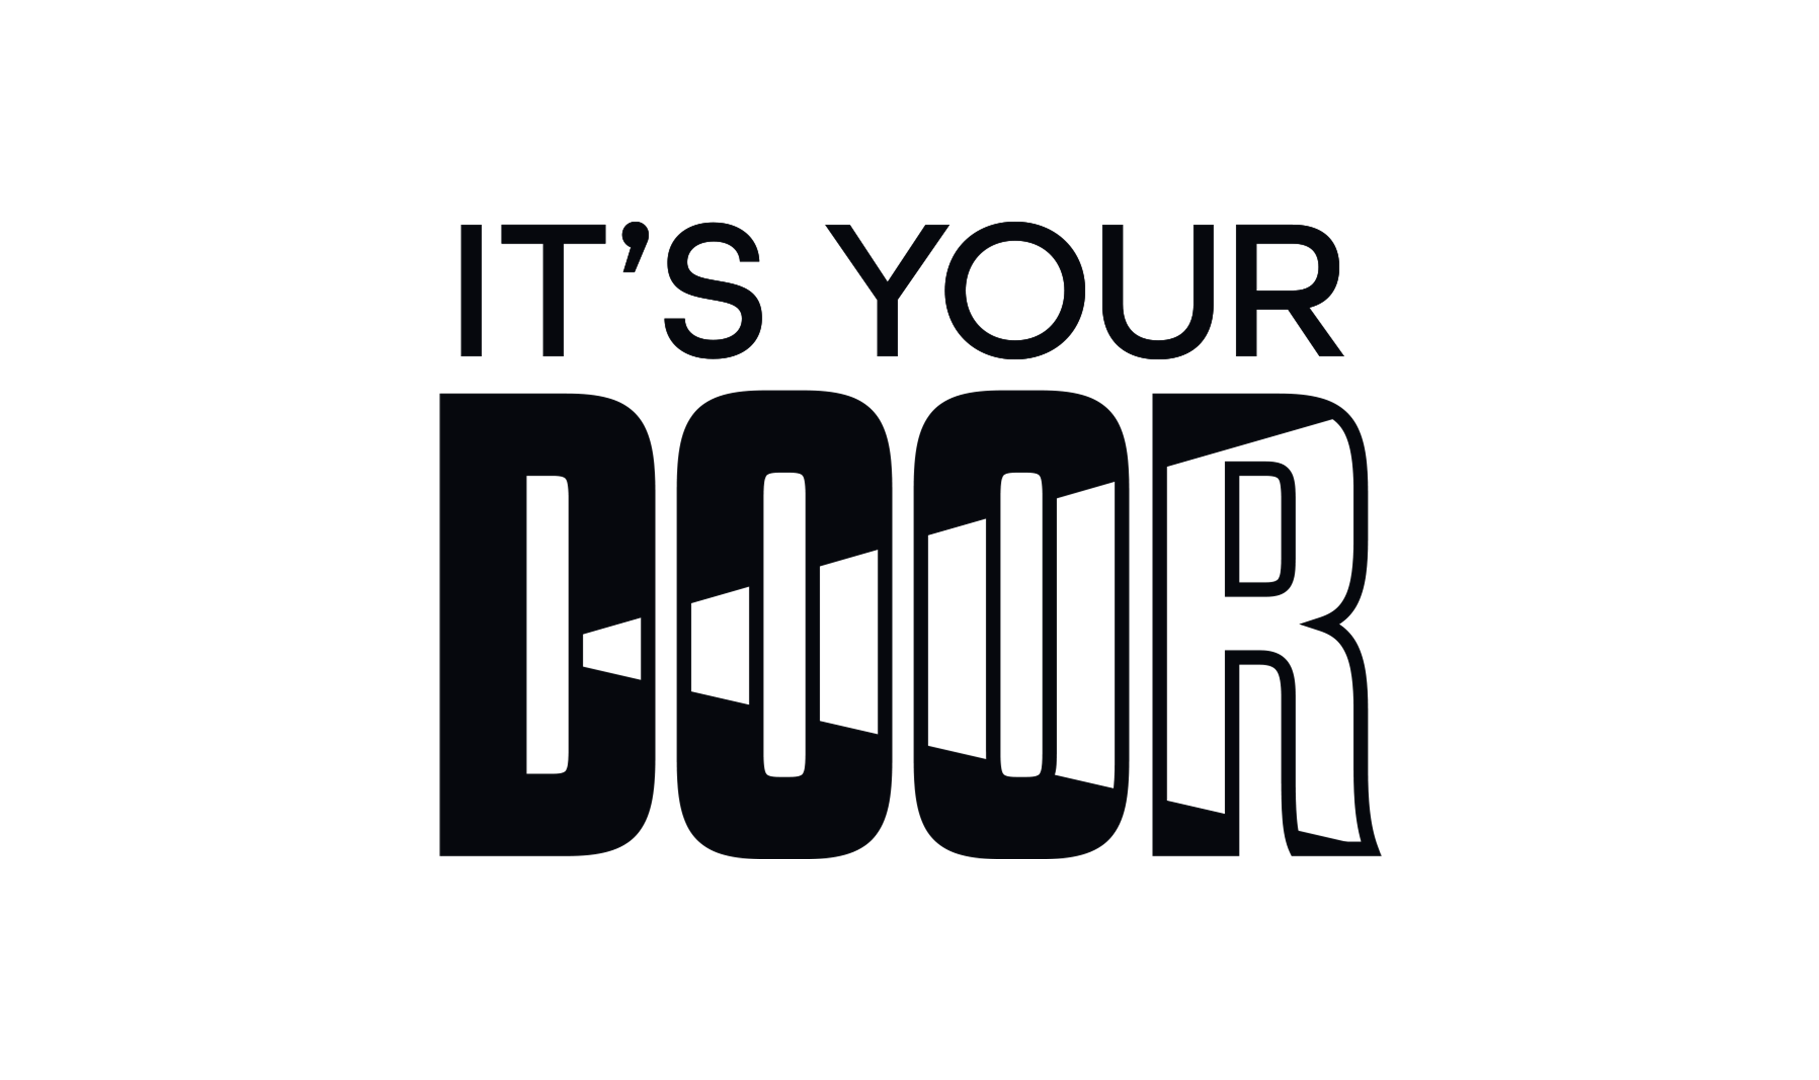 It’s Your Door